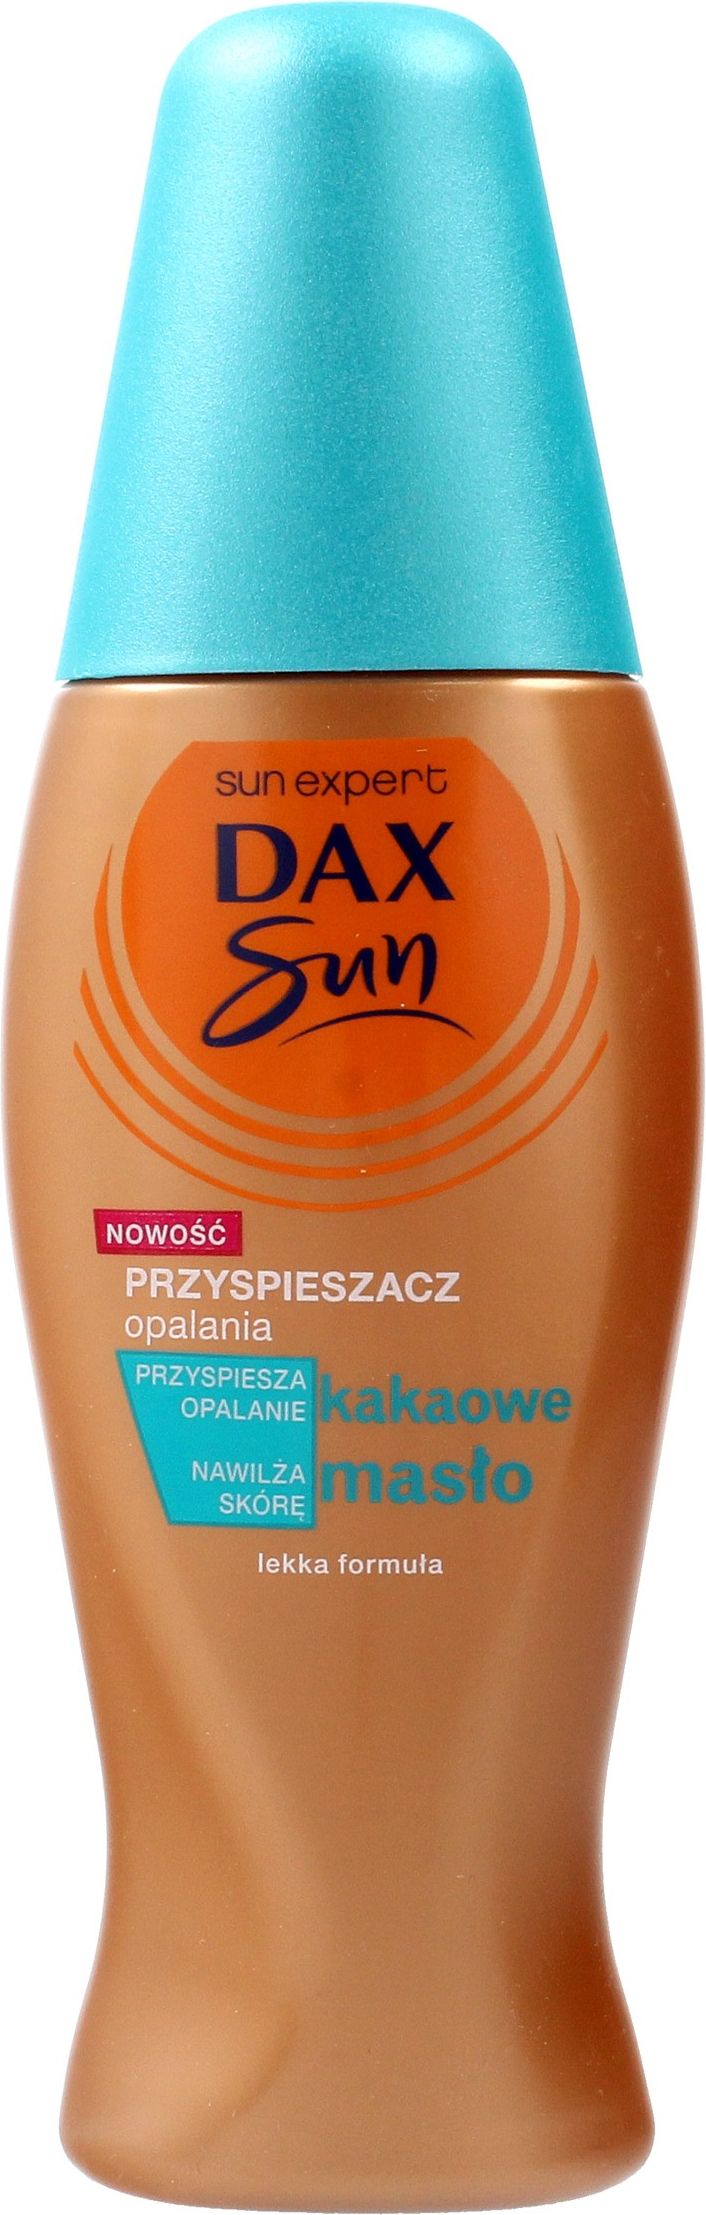 Dax Sun Przyspieszacz opalania z maslem kakaowym 150ml (073558) 073558 (5900525053558)